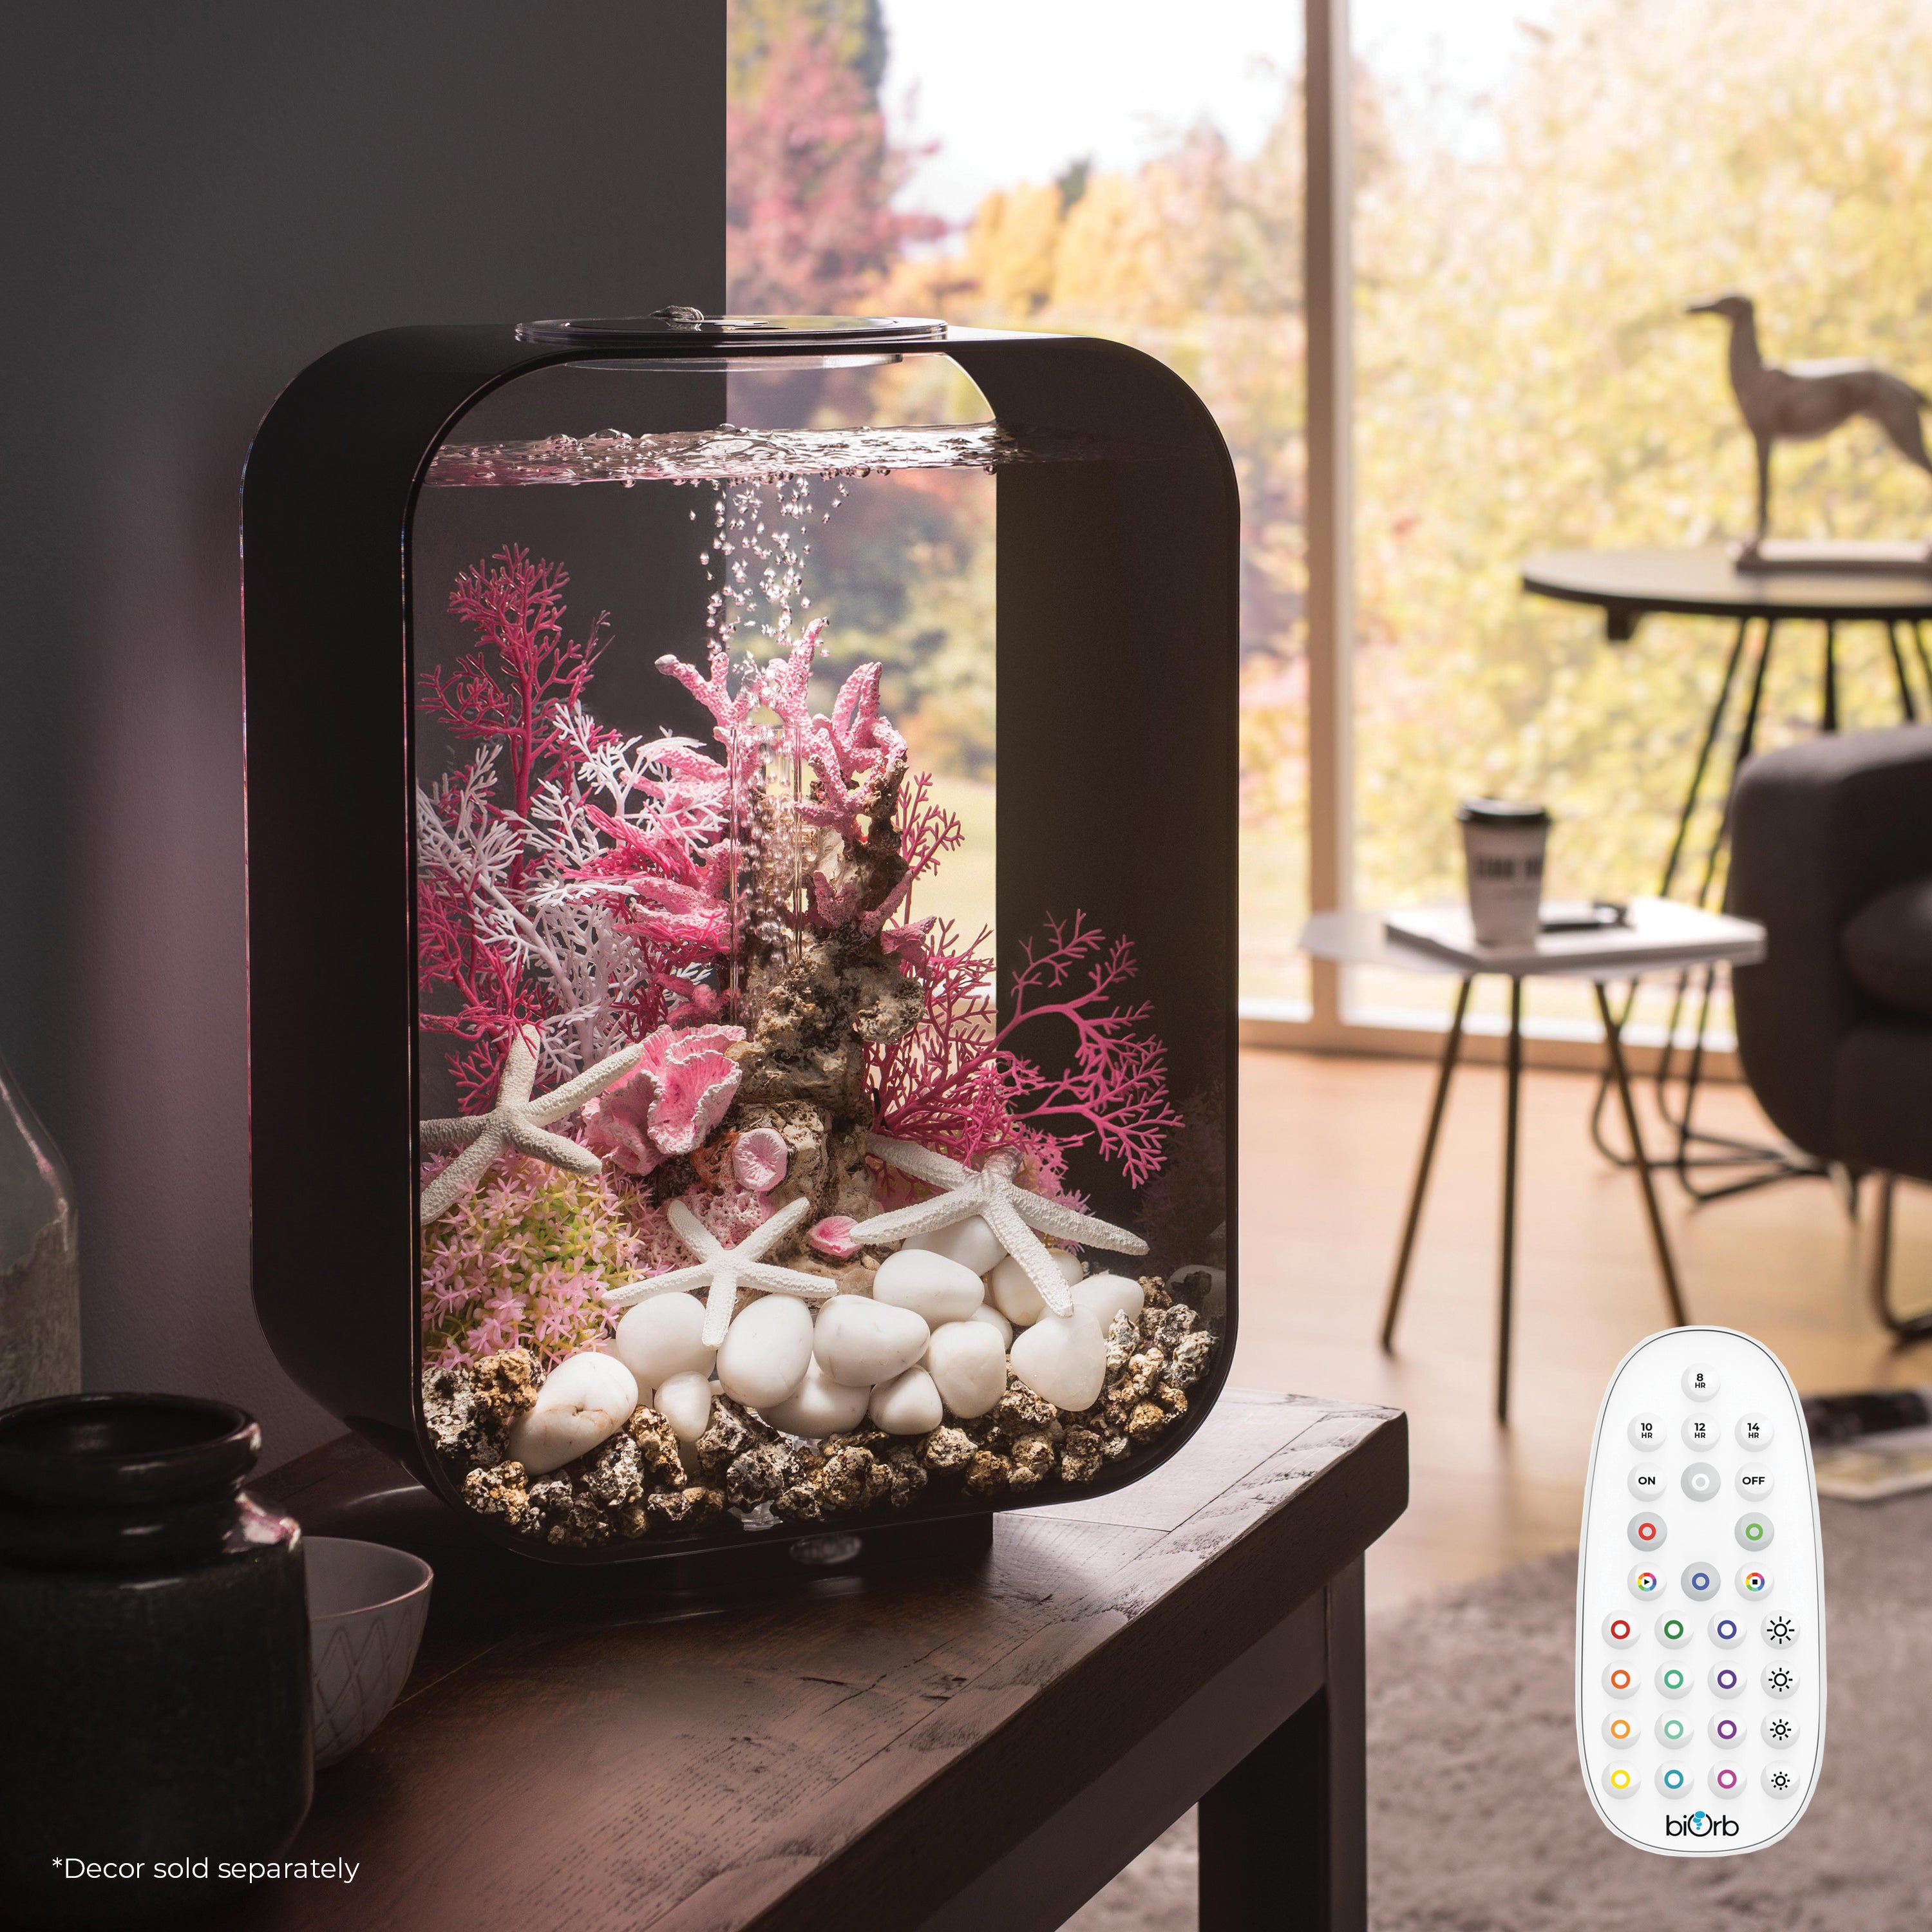 Get inspiration for your aquarium LIFE 15 Aquarium with MCR Light - 4 gallon available in black